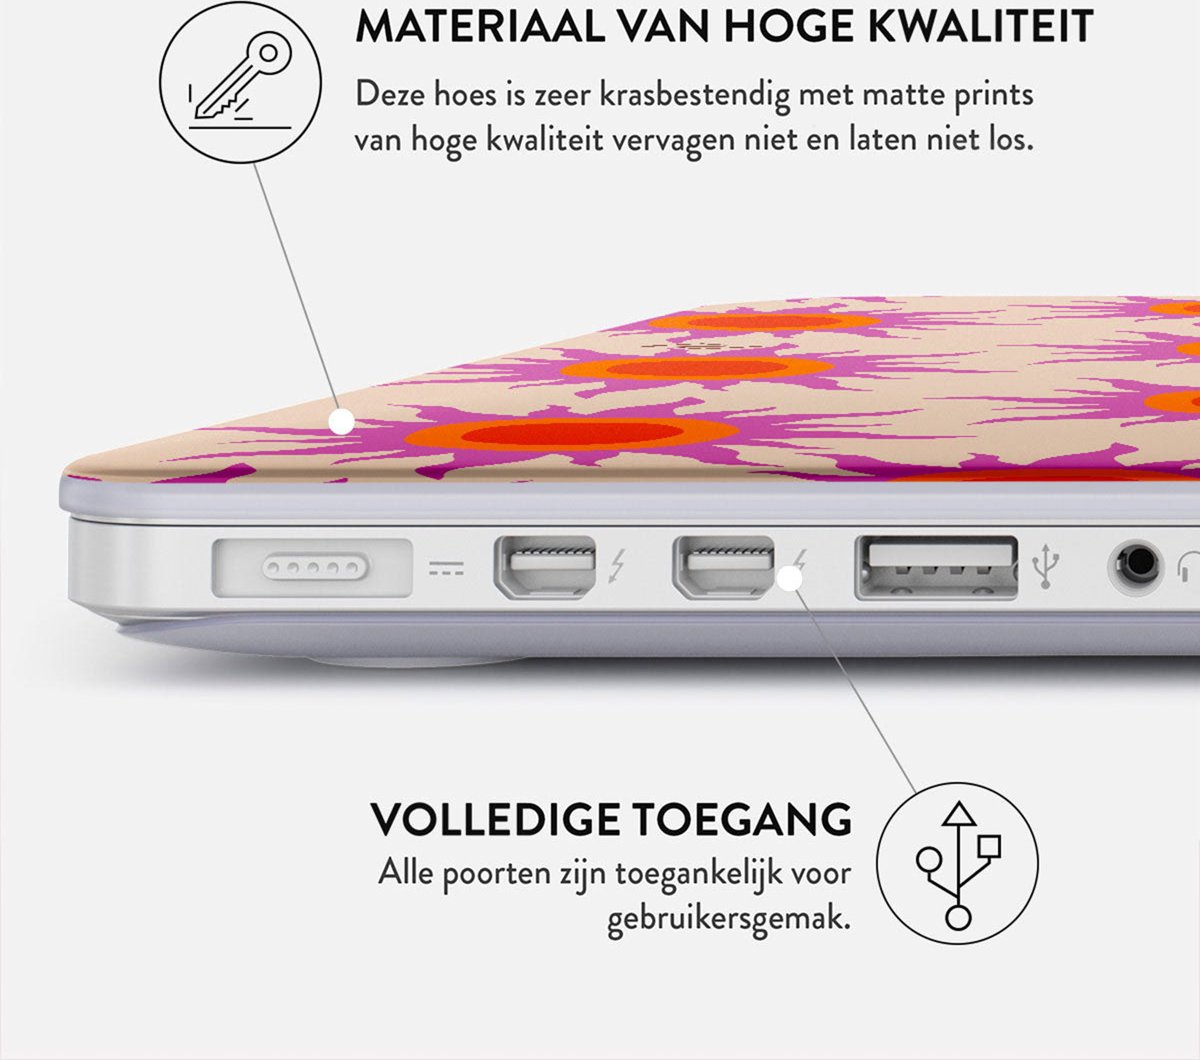 Mobigear Matte - Apple MacBook Pro 13 Pouces (2020-2022) Coque